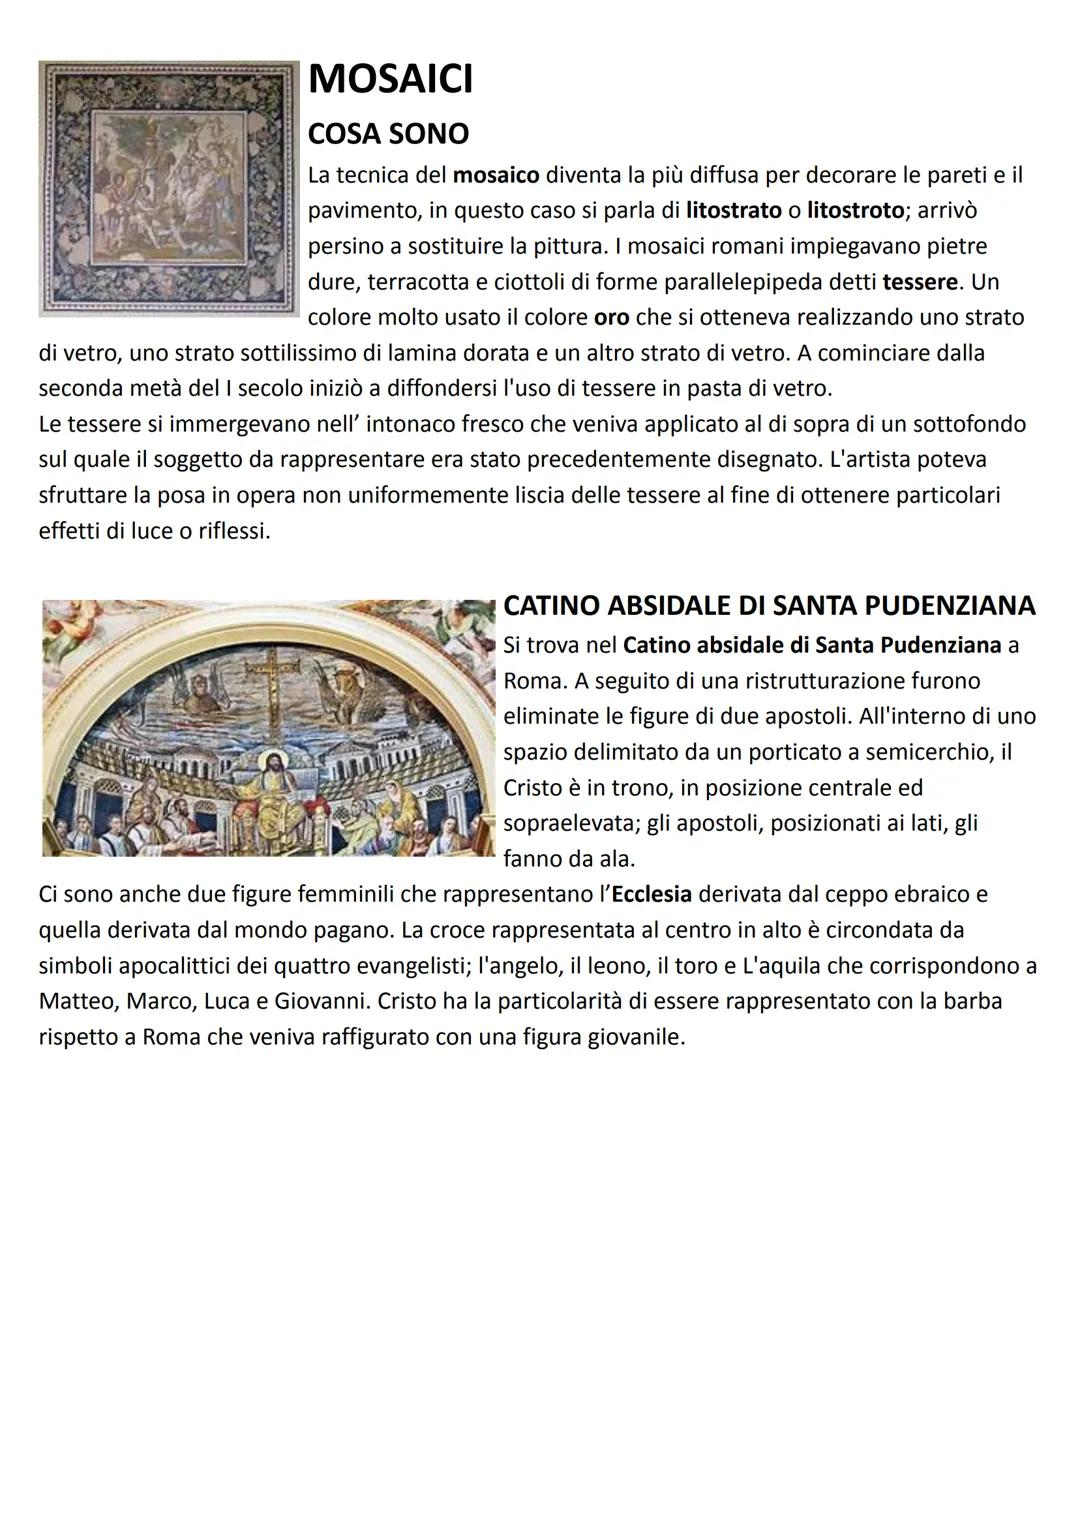 ARTE PALEOCRISTIANA
NASCITA
Prima dell'Editto di Milano (313 d.C.) con il quale Costantino
concedeva la libertà di culto, i cristiani si riu